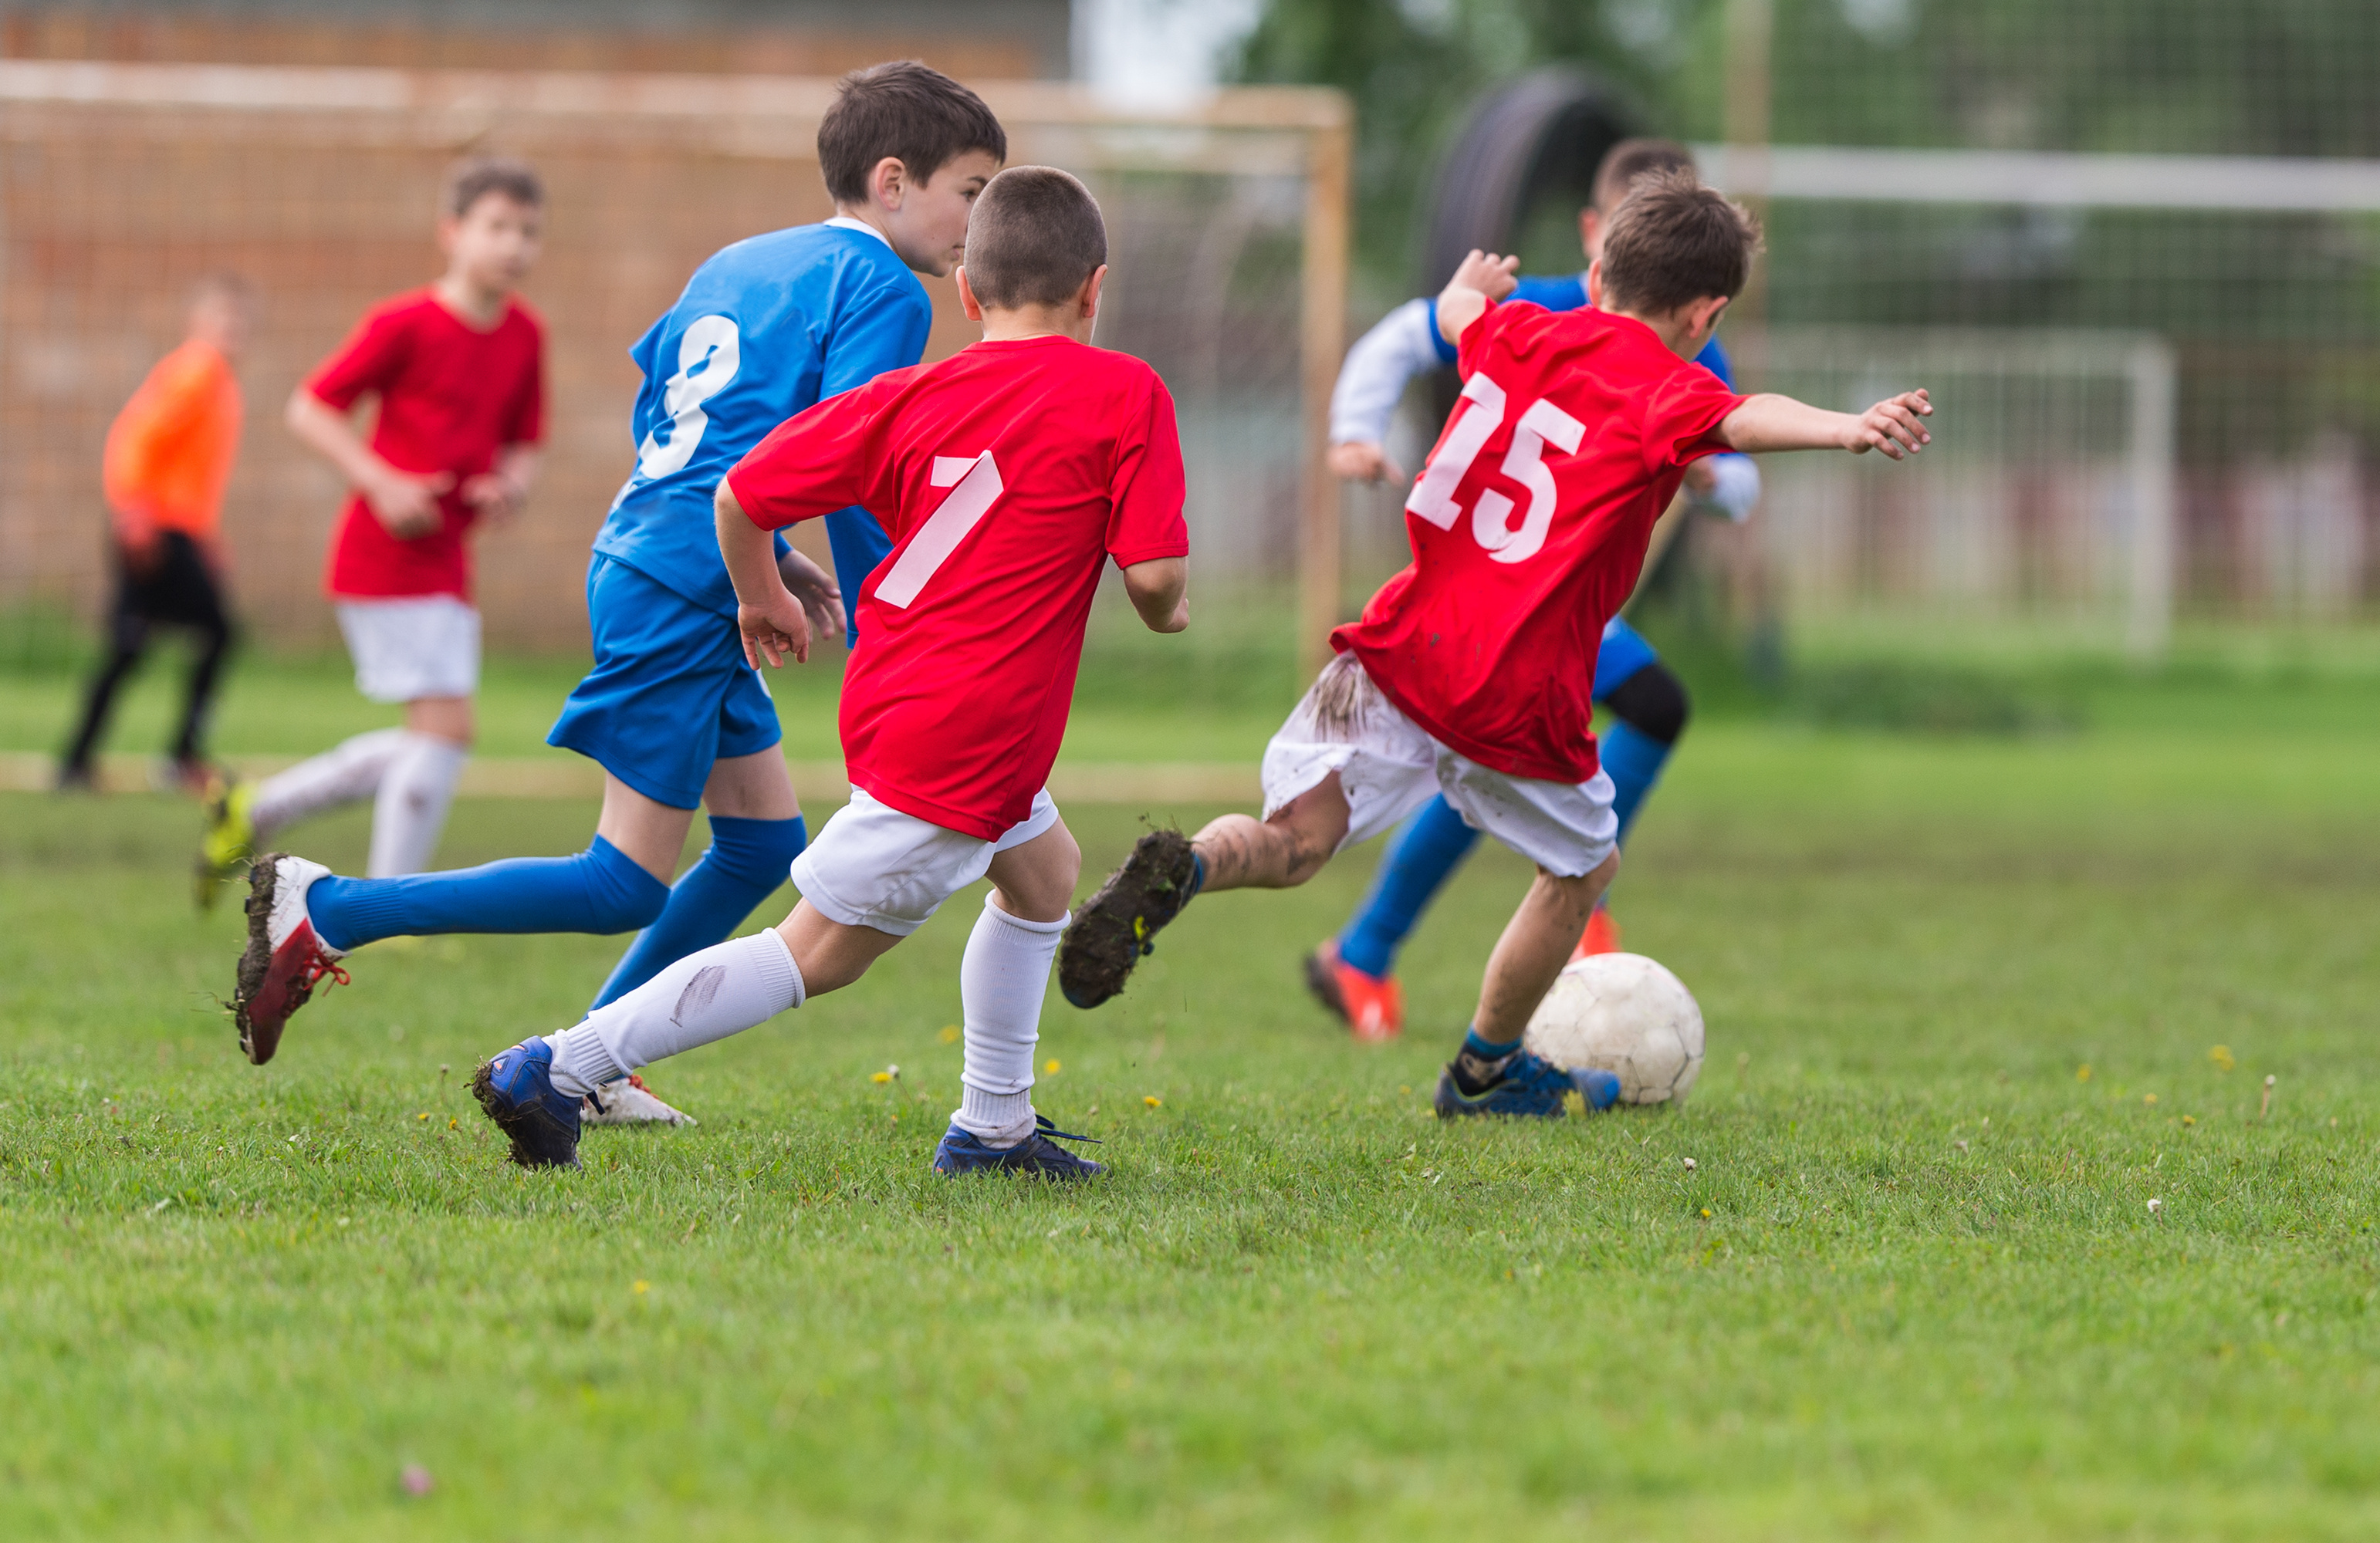 kids run across a field with a soccer ball